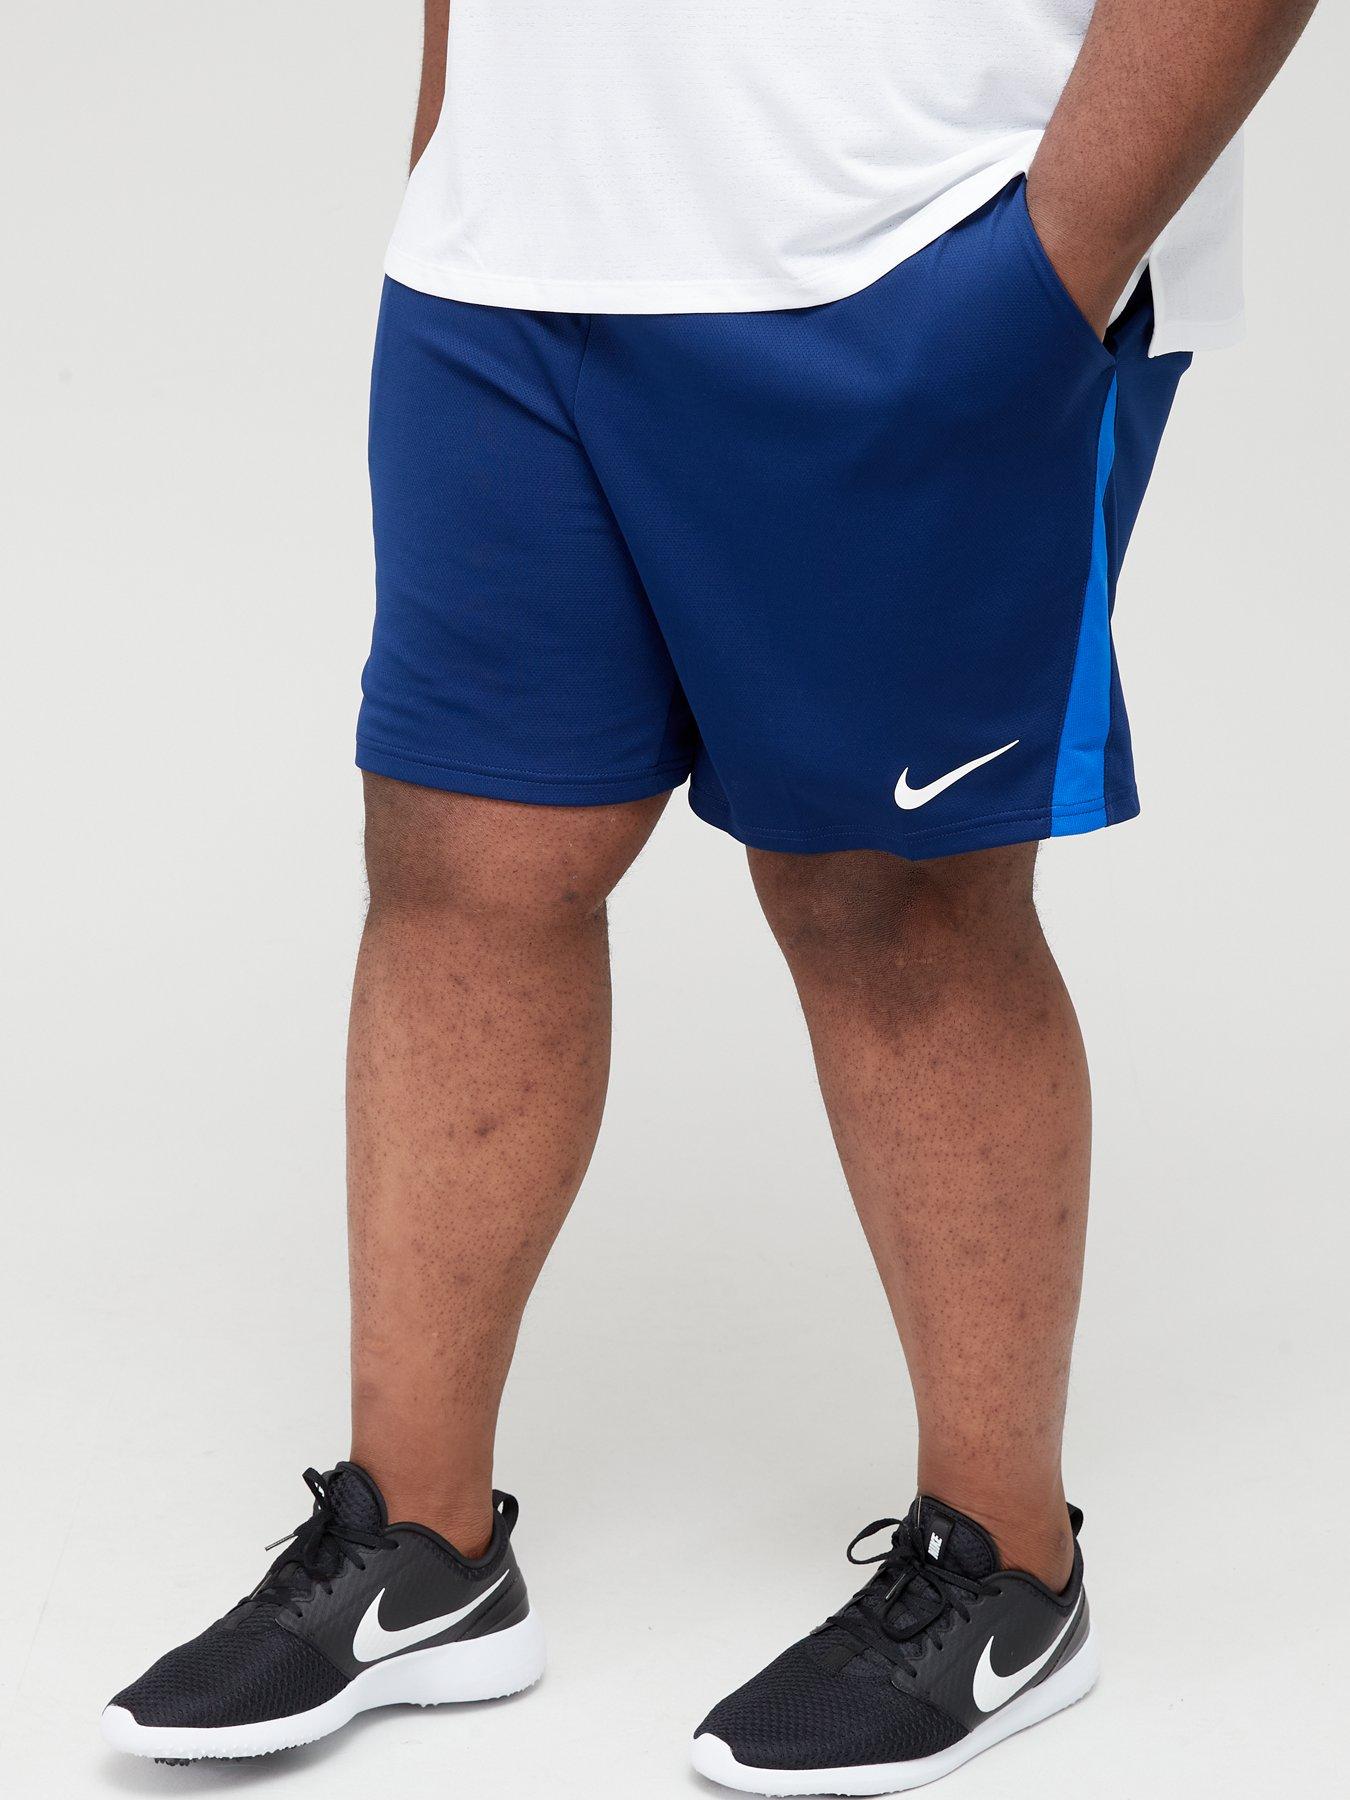 Shorts Training Plus Size Dry Shorts 5.0 - Blue